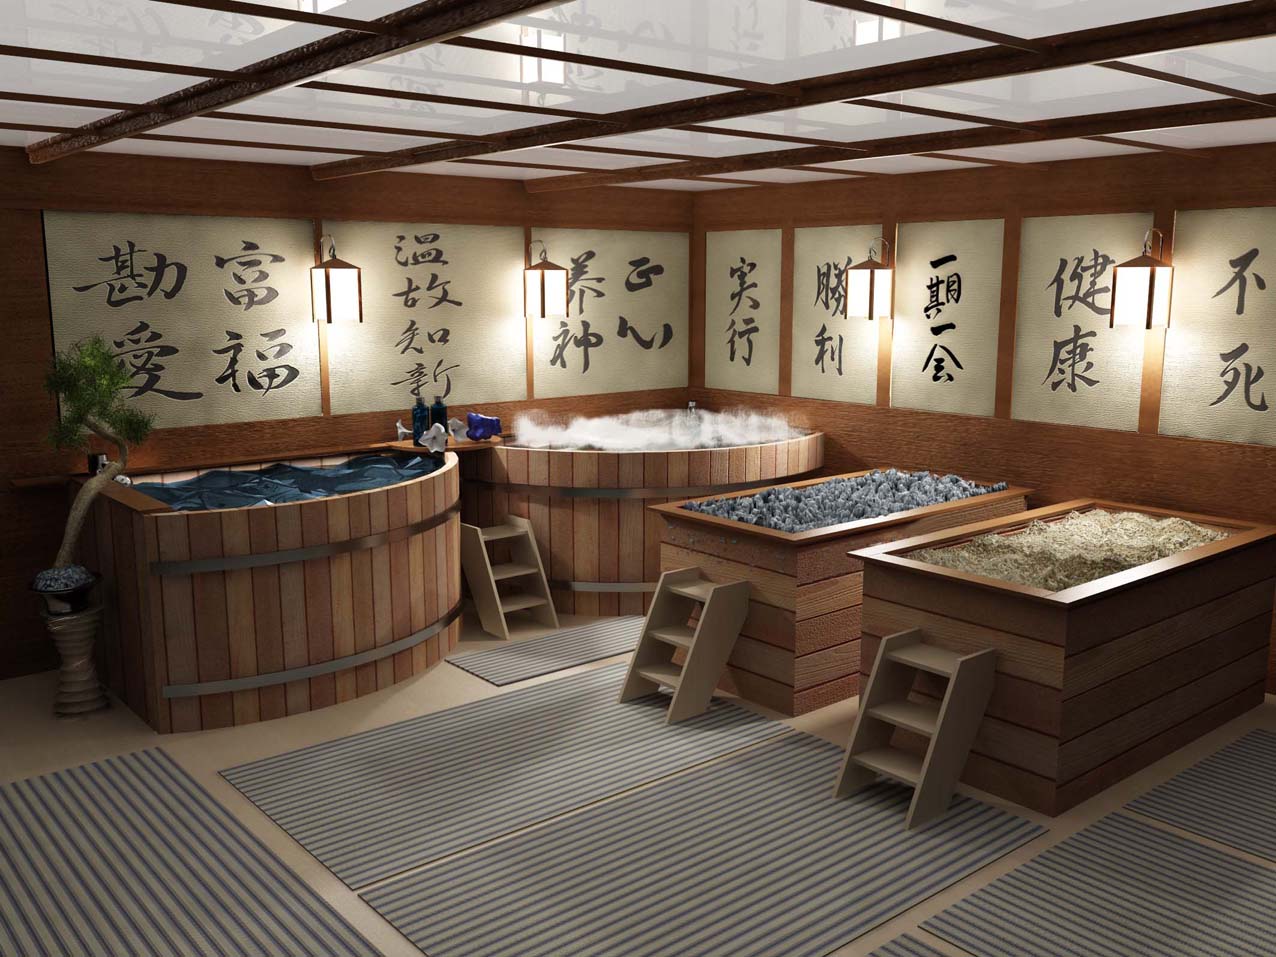 Японская баня своими руками - делаем на даче восточный уголок